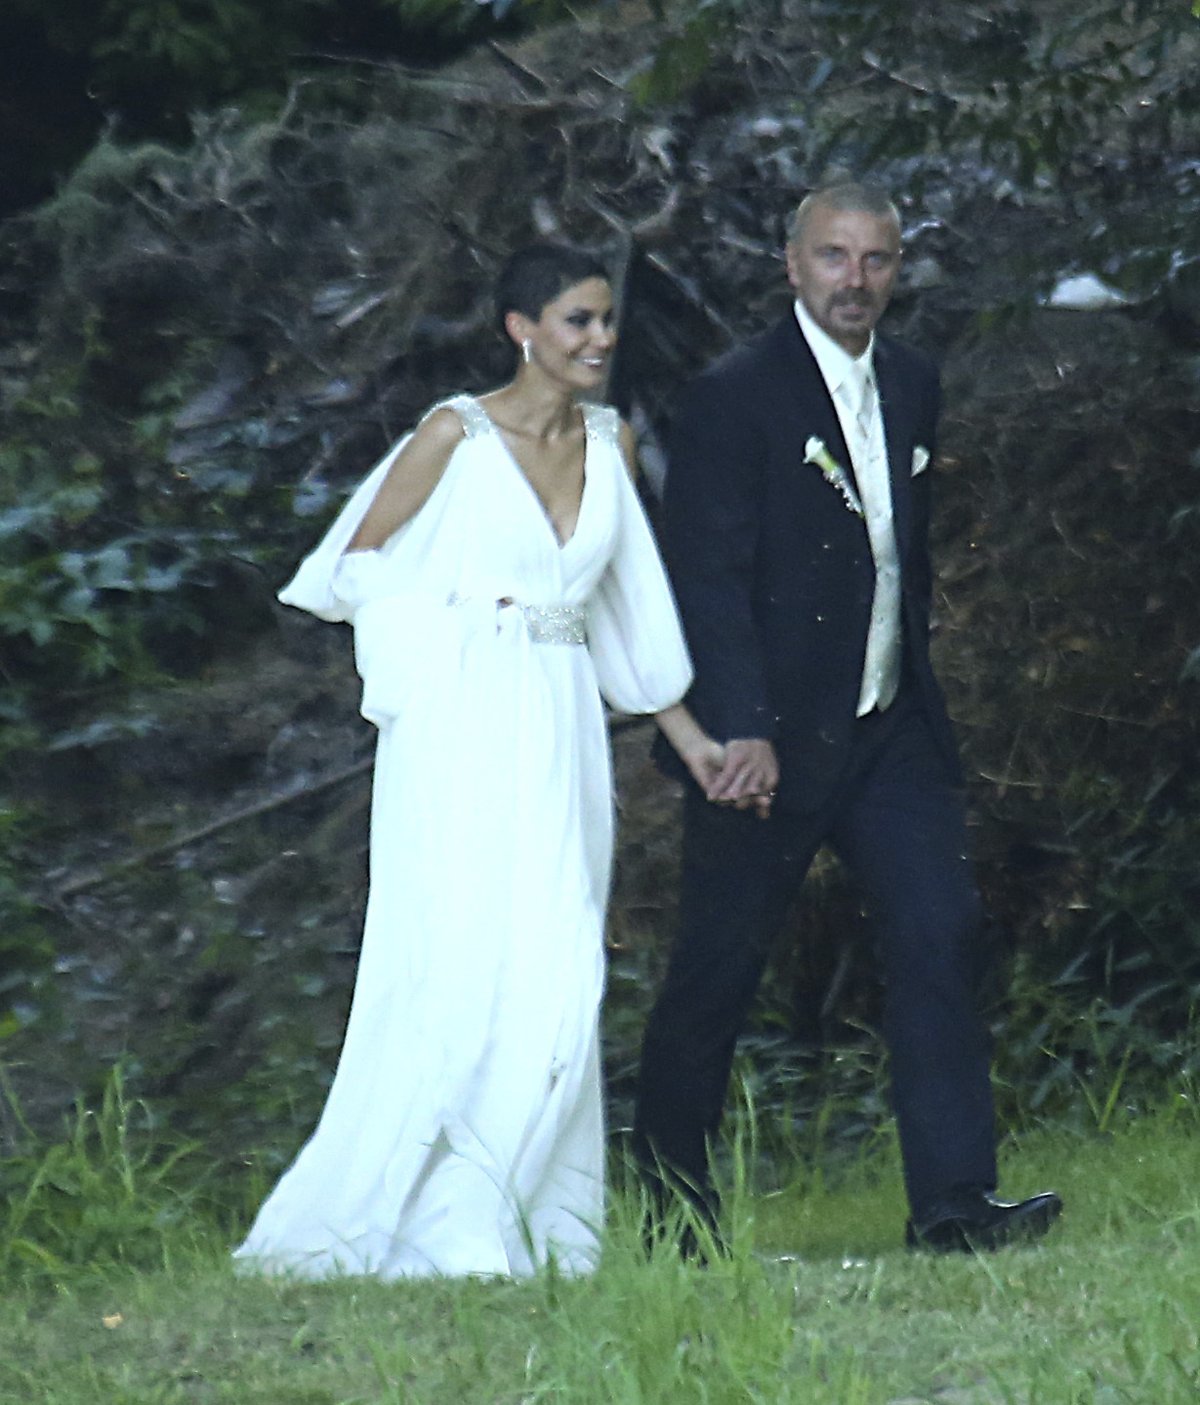 Srpen 2013 Snímek ze svatby. Nevěsta Vlaďka hledí v dáli, ženich Tomáš pláče. Jak příhodné k jejich momentální situaci.